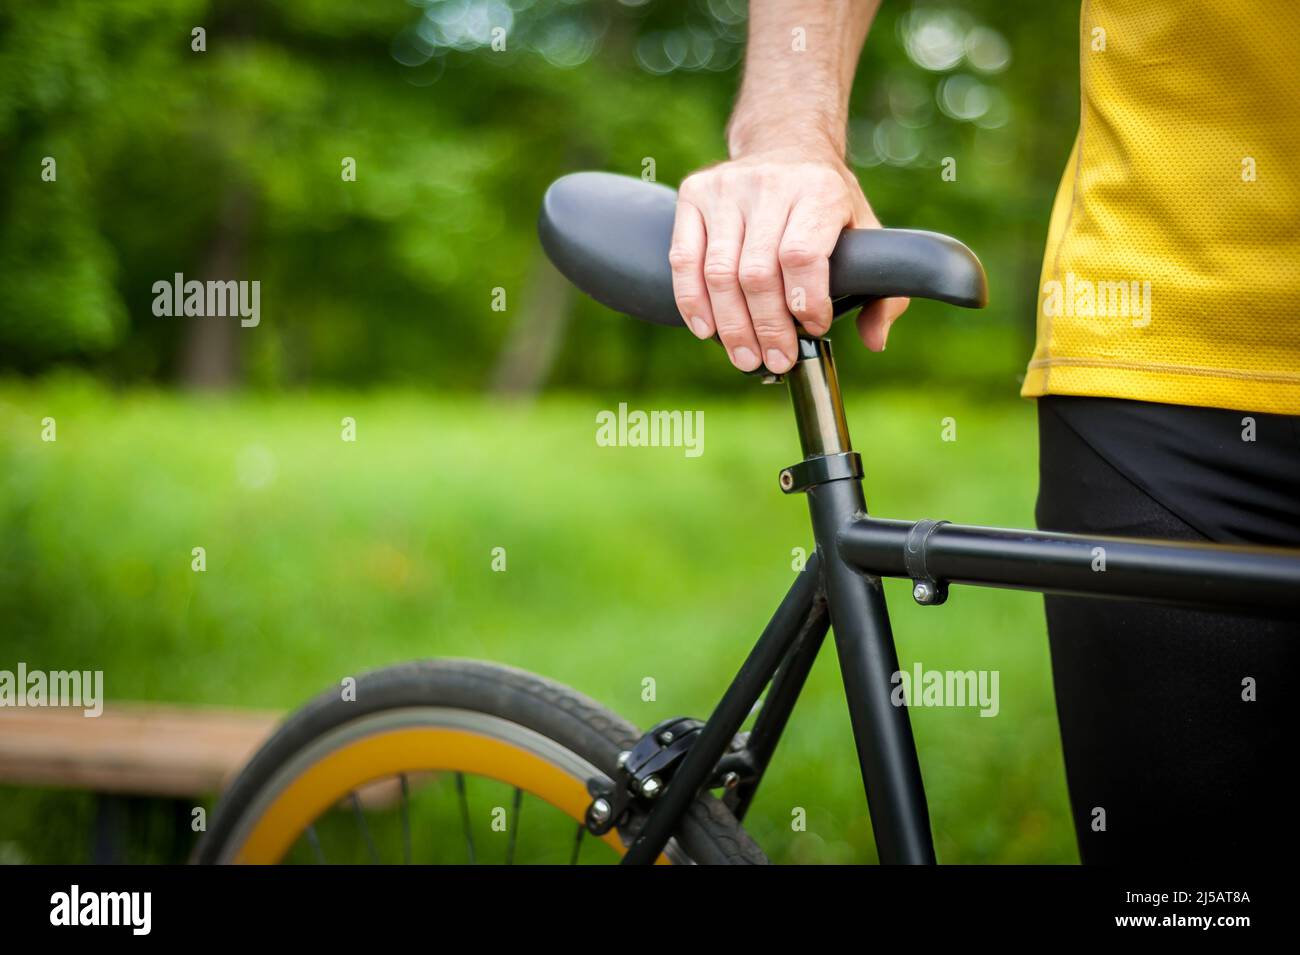 Cycliste avec son vélo, gros plan. Photographie en extérieur. Vous pouvez voir ses mains et la roue. Banque D'Images